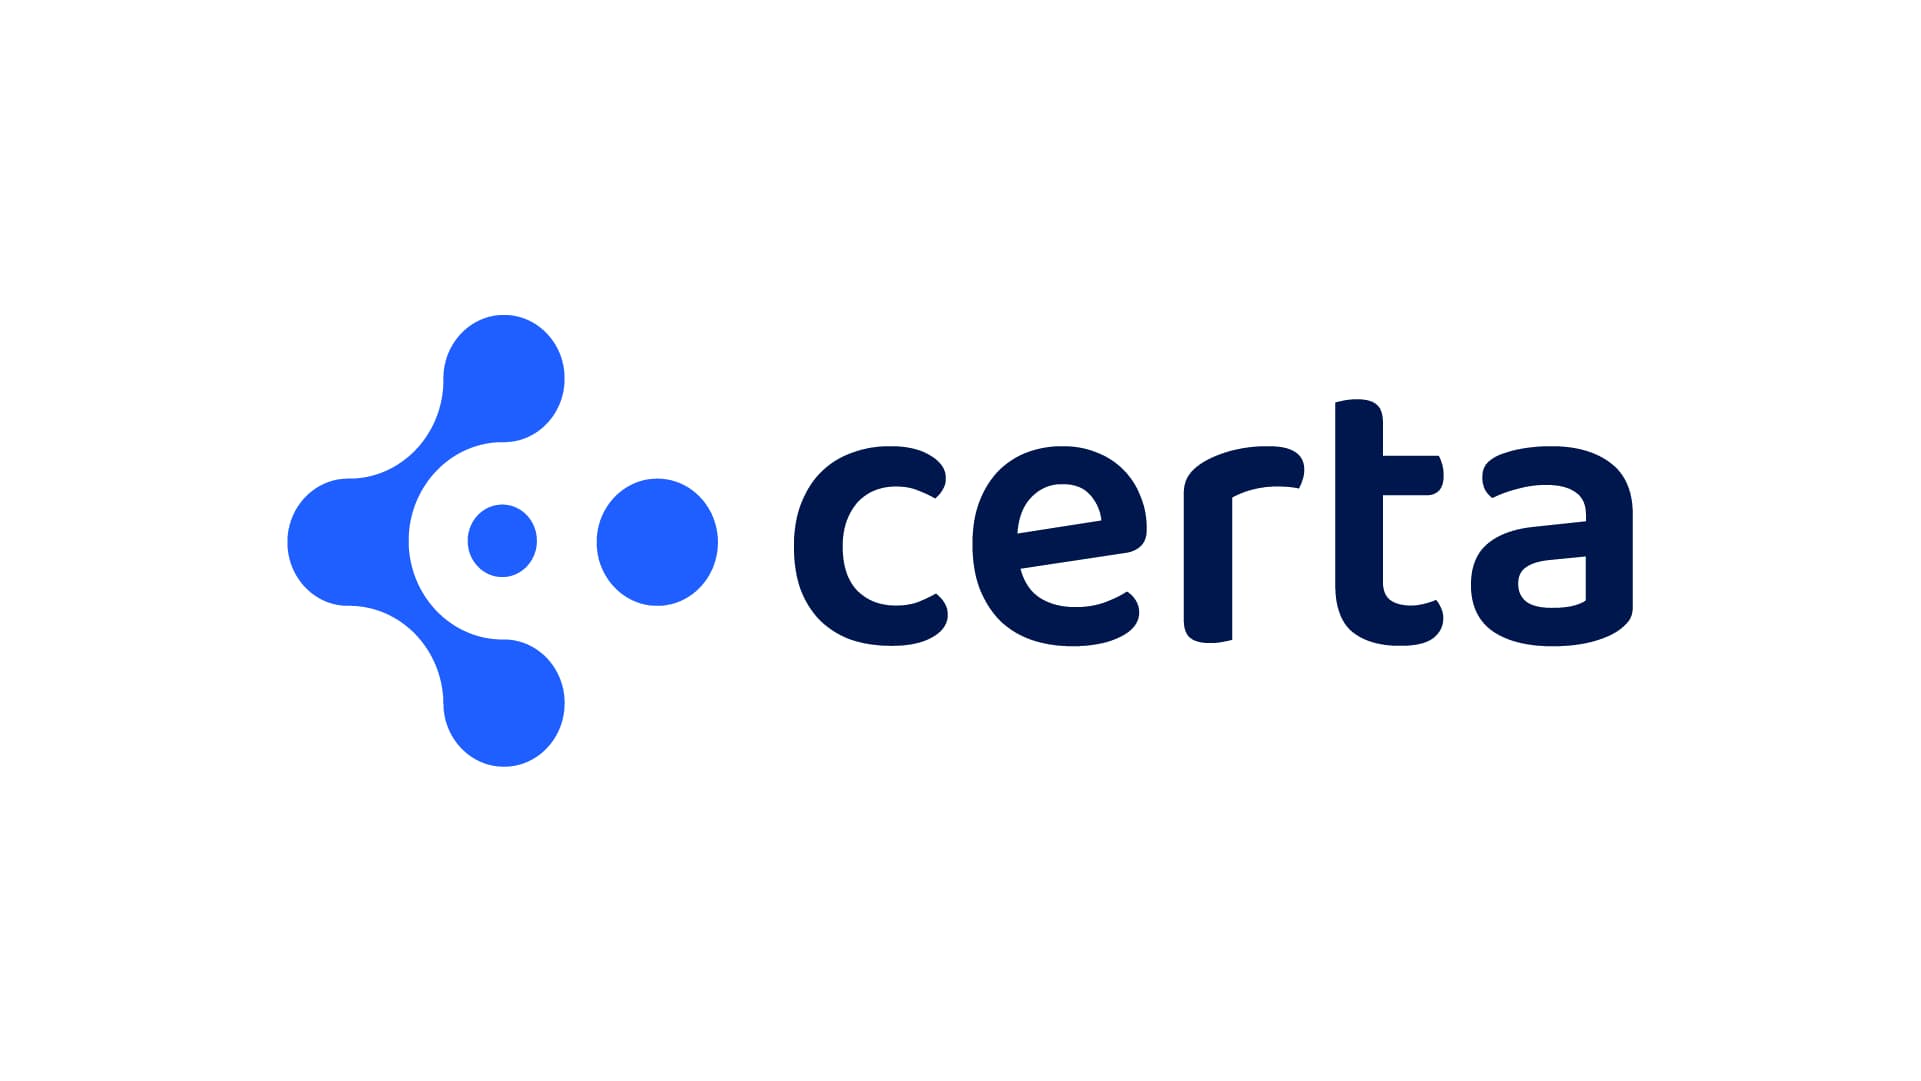 コンプライアンスとリスク管理の新興企業CertaがシリーズBラウンドで3,500万ドルを調達